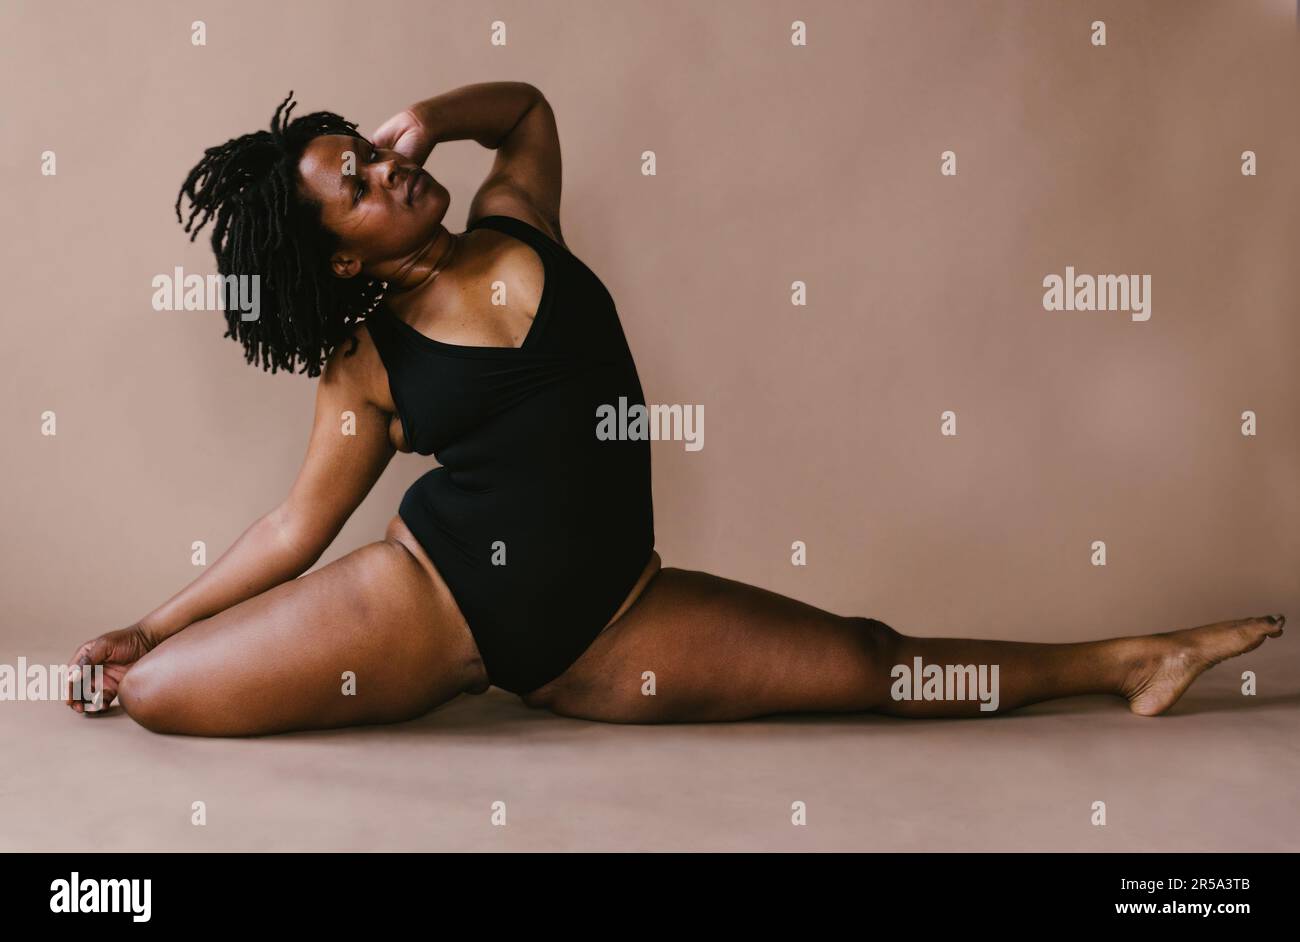 Half Split Yoga Pose Young Woman: стоковая векторная графика (без  лицензионных платежей), 1976623424 | Shutterstock